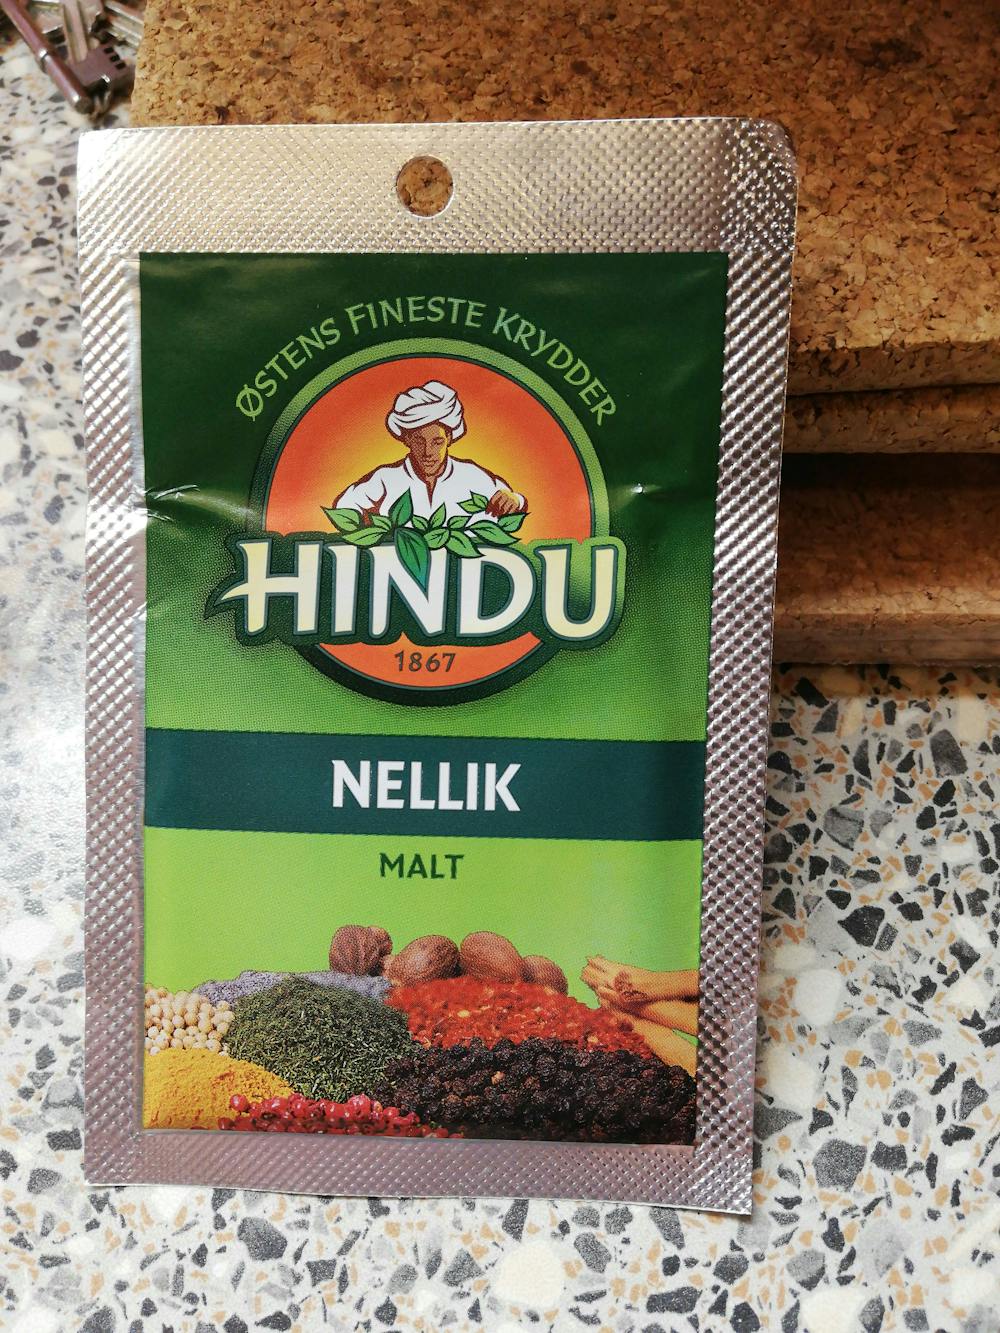 Nellik, malt, Hindu